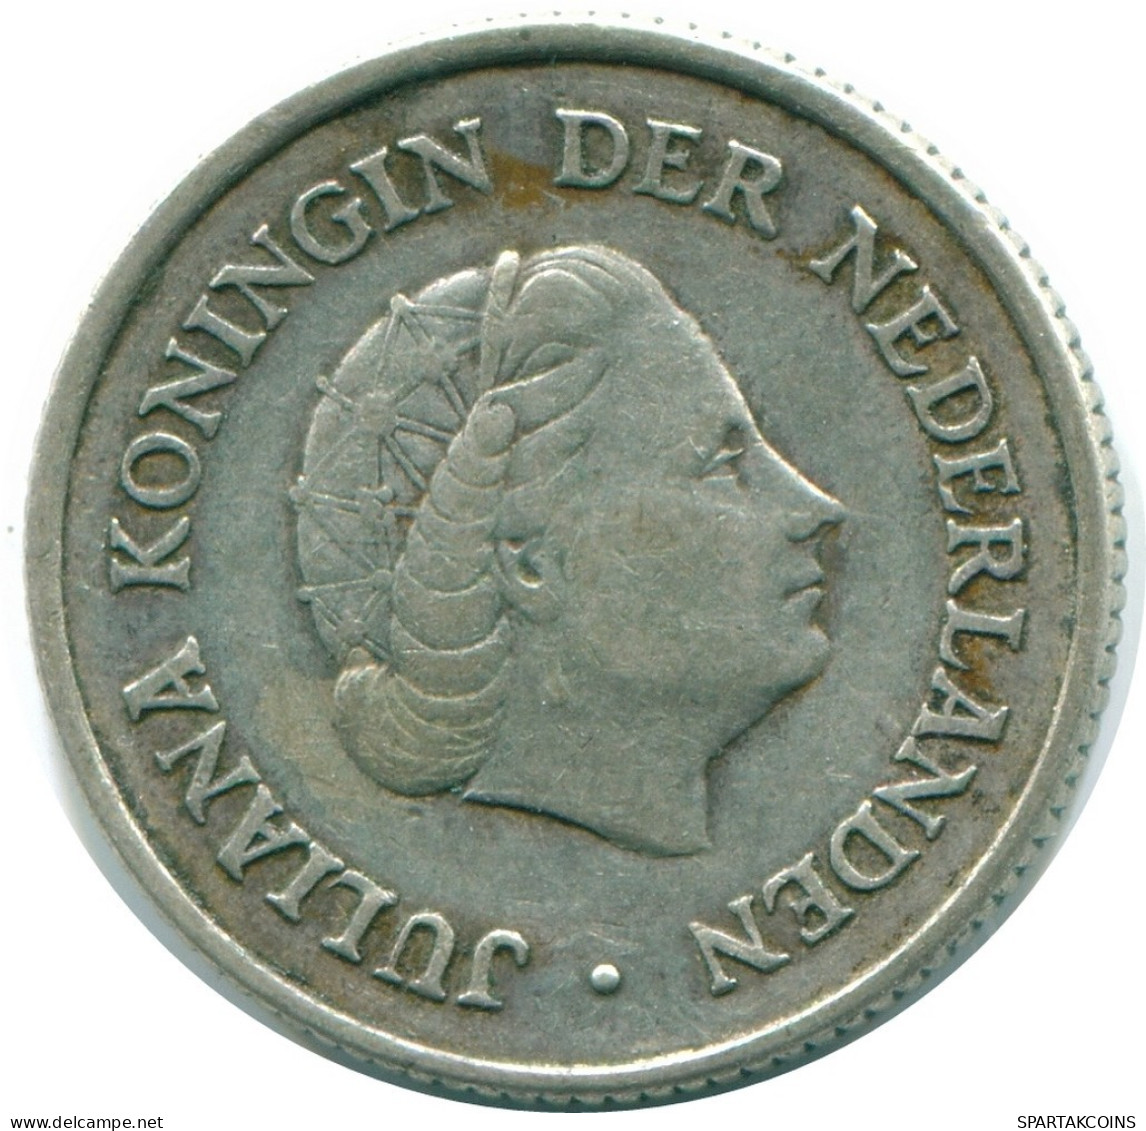 1/4 GULDEN 1962 NIEDERLÄNDISCHE ANTILLEN SILBER Koloniale Münze #NL11135.4.D.A - Niederländische Antillen